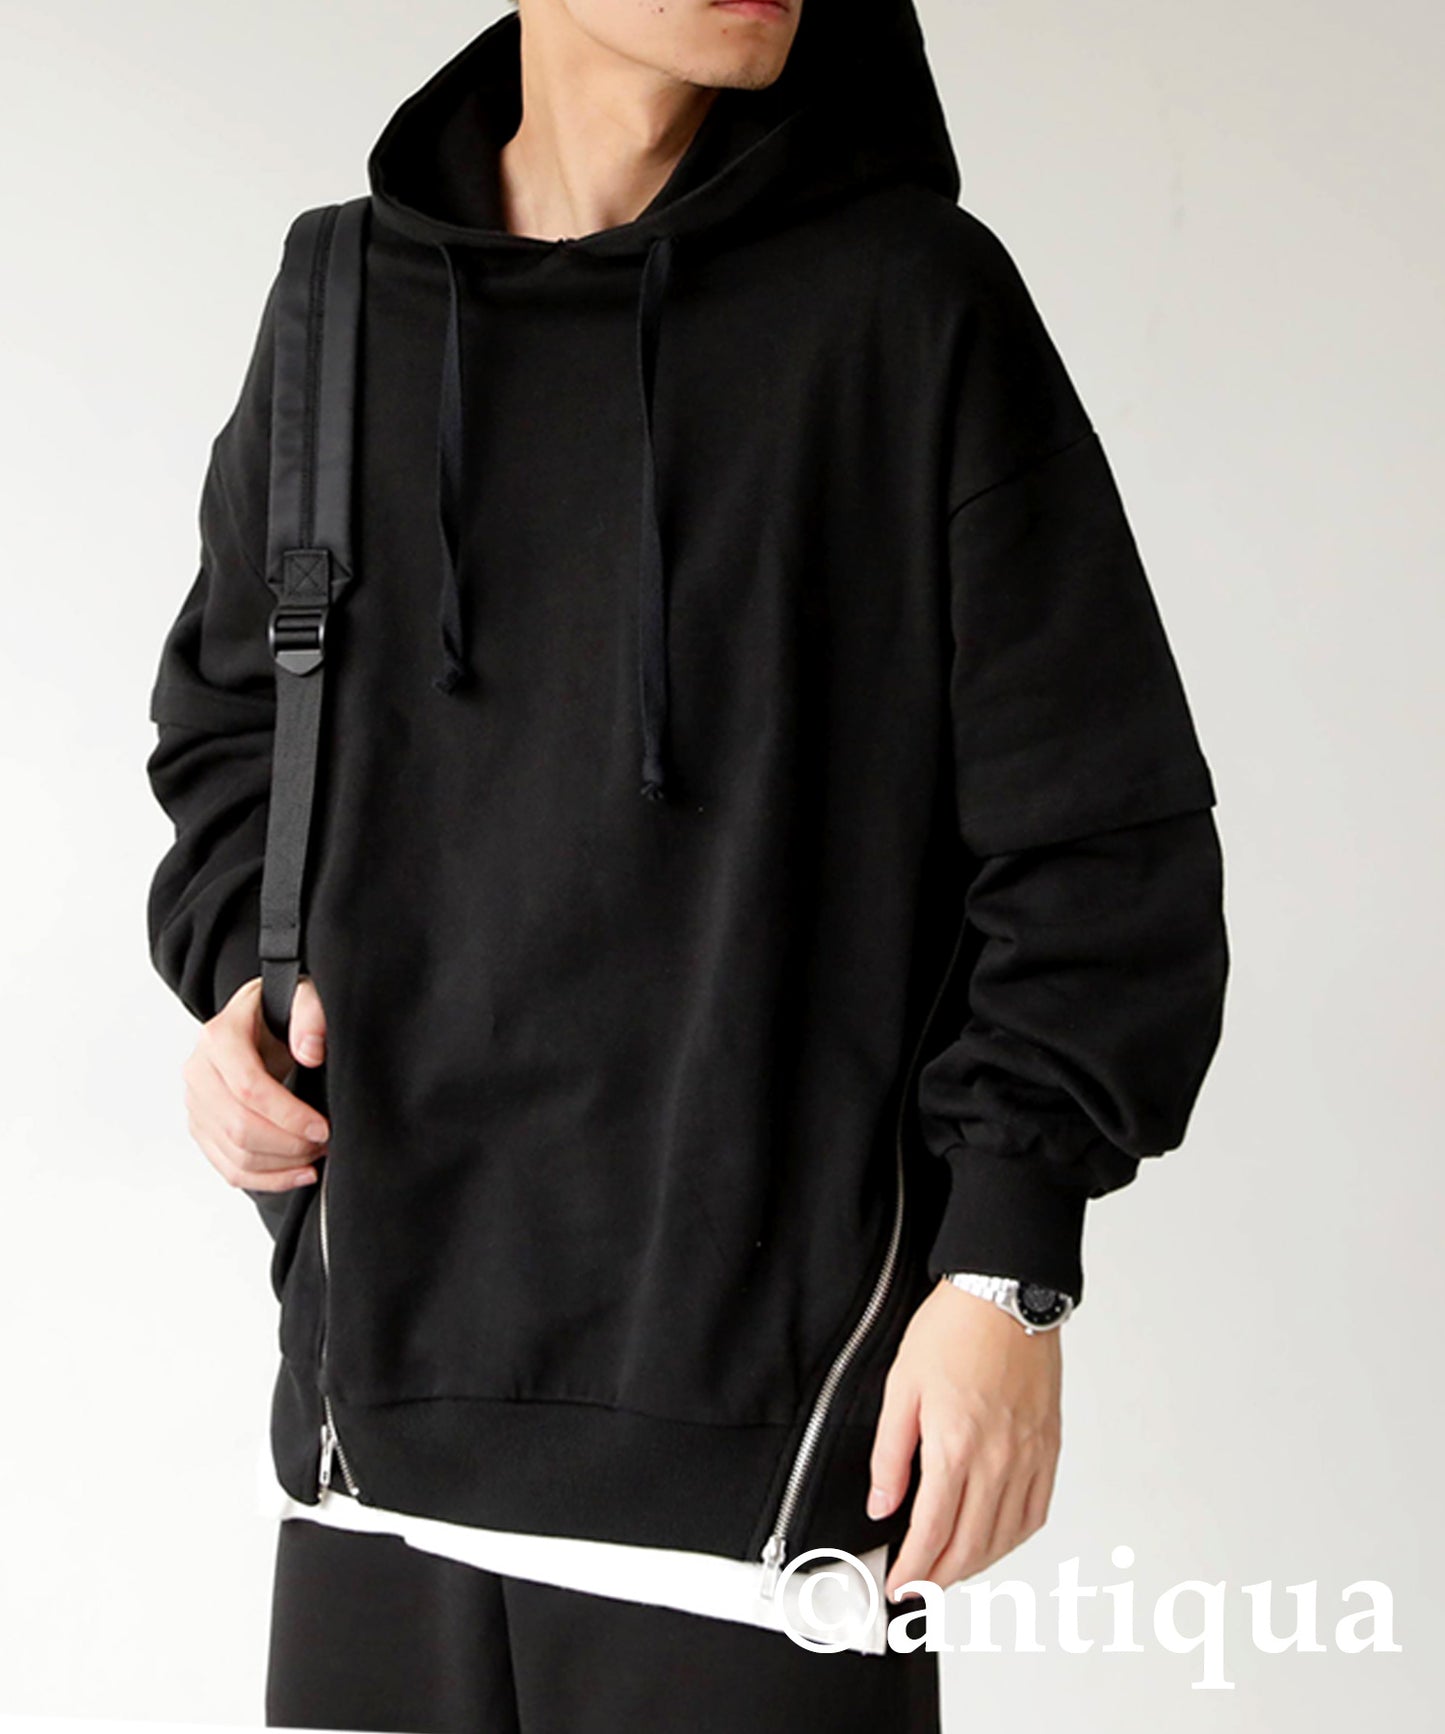 Men's zipper design hoodie